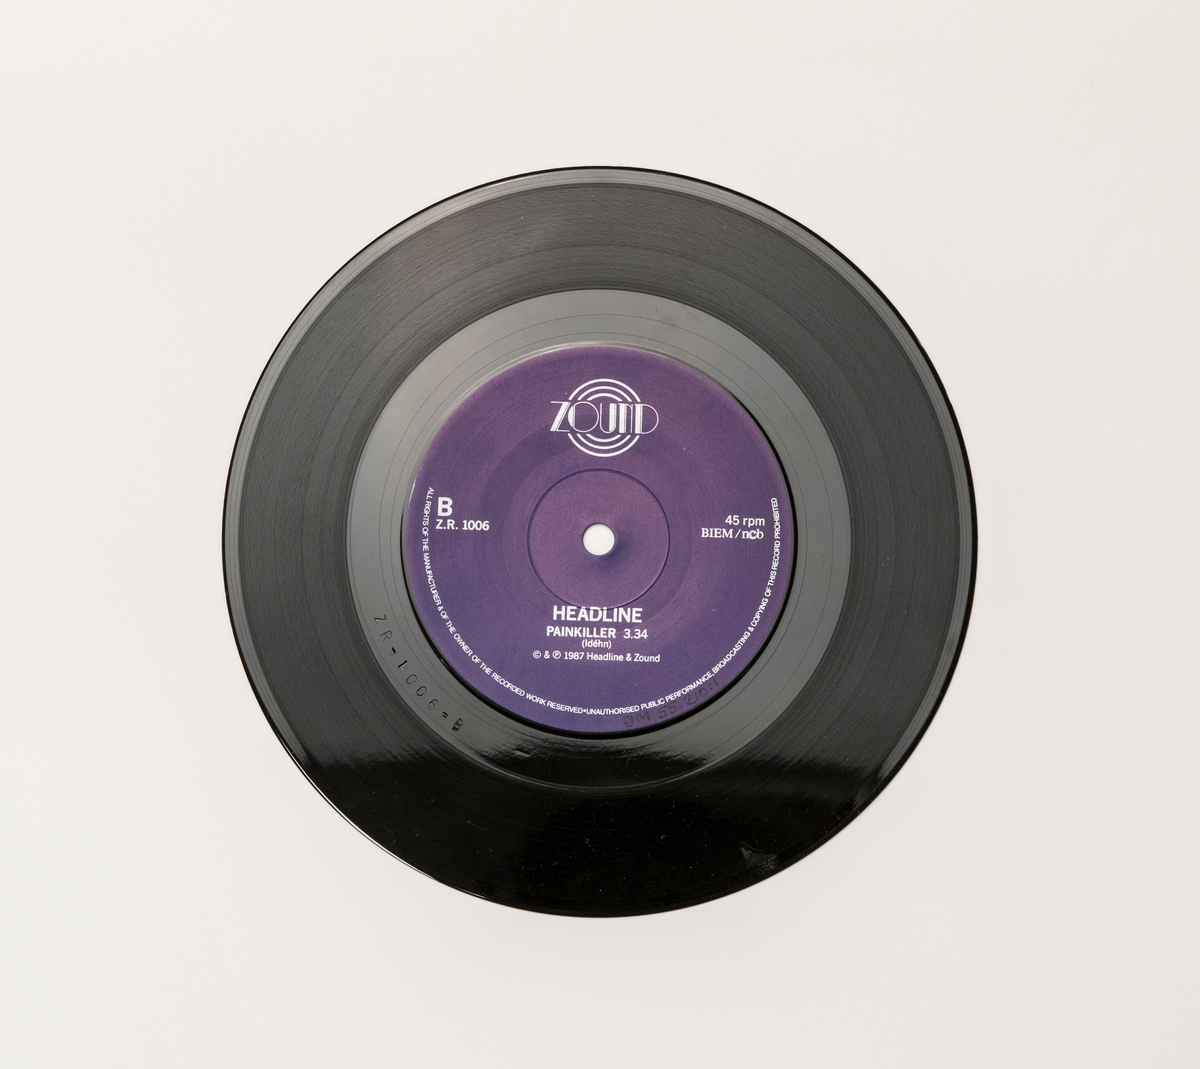 Singel-skiva av svart vinyl med lila pappersetikett, i omslag av papper.

Innehåll
Sida A: Mutual Friends
Sida B: Painkiller

JM 55210:1, Skiva
JM 55210:2, Omslag